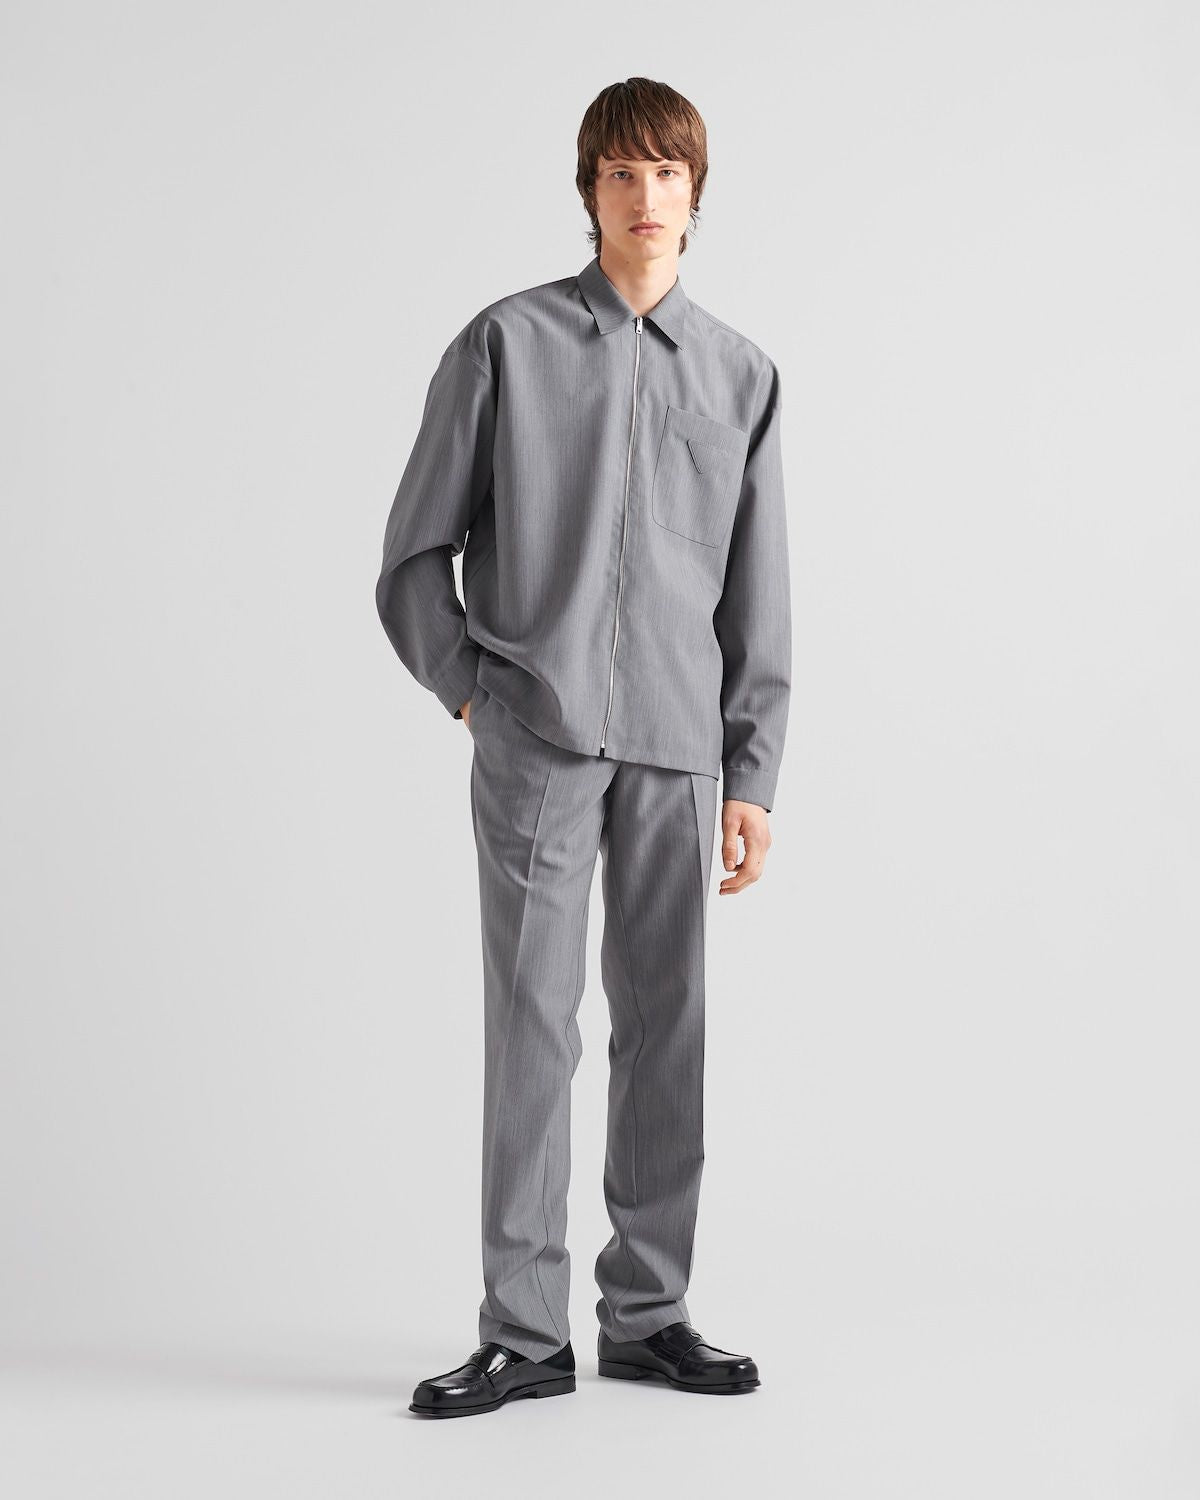 PRADA Gray Mohair Silk Shirt for Men - FW23 Collection